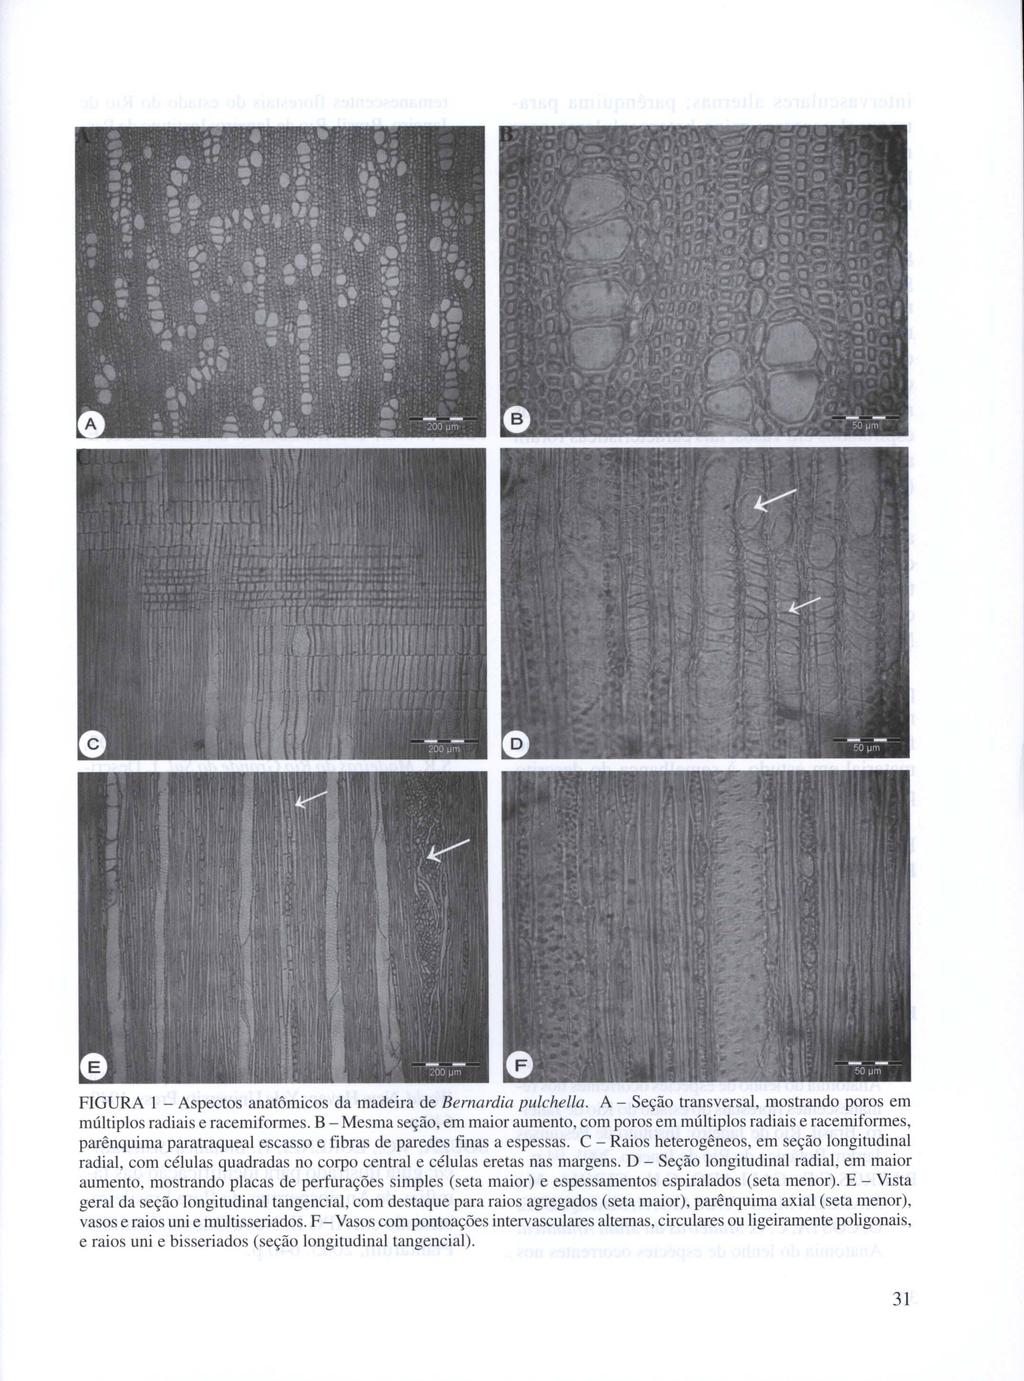 FIGURA 1 - Aspectos anatômicos da madeira de Bernardia pulchella. A - Seção transversal, mostrando poros em múltiplos radiais e racemiformes.